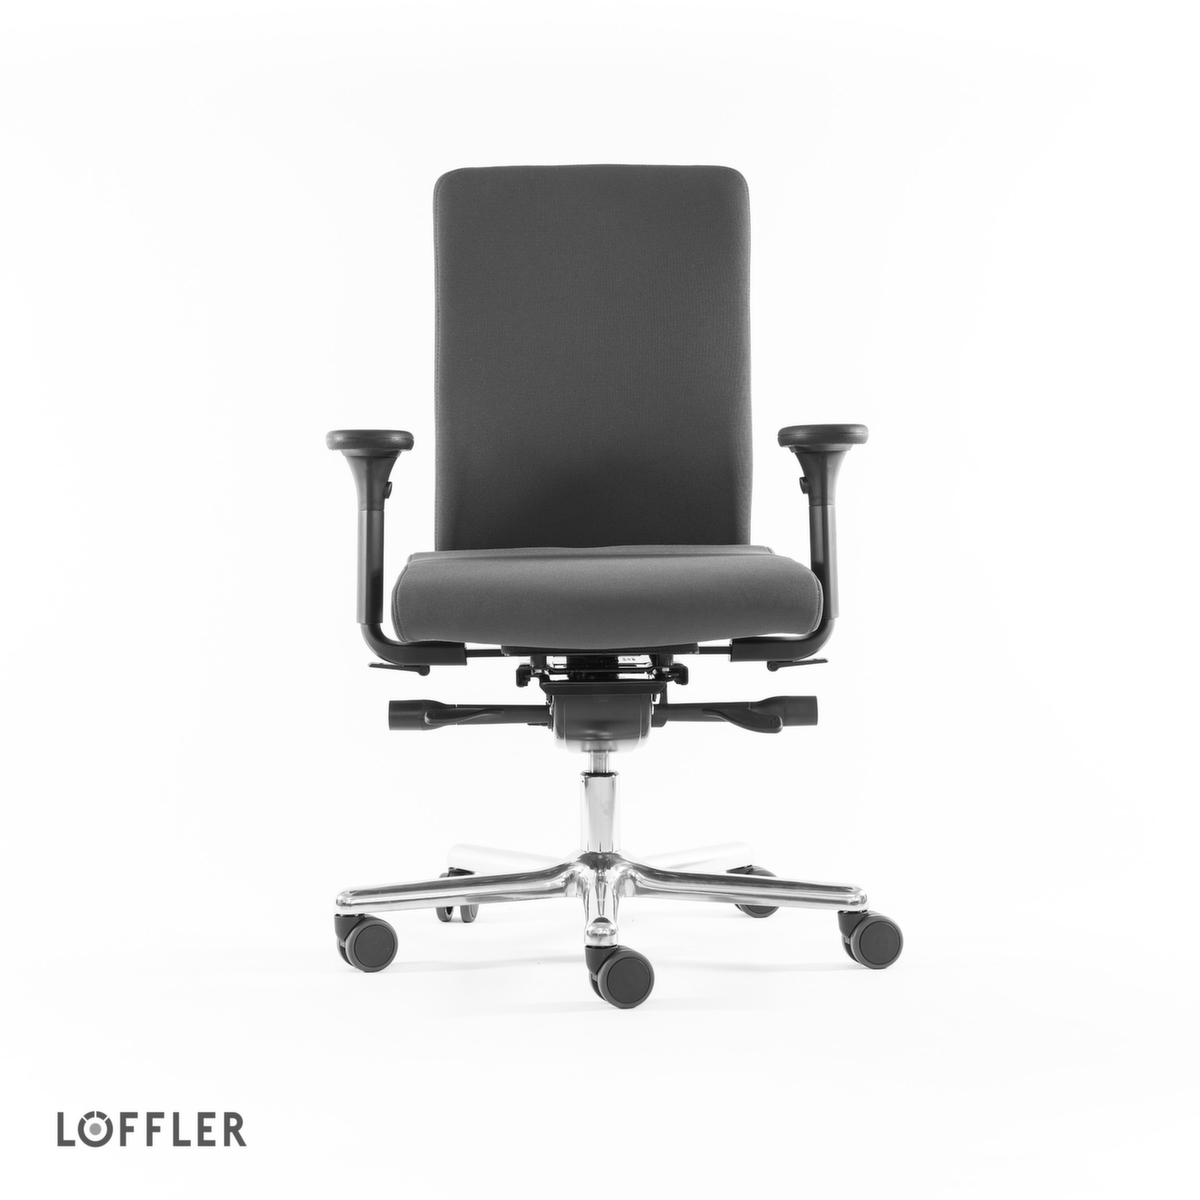 Löffler Bürodrehstuhl mit viskoelastischem Sitz, grau Standard 2 ZOOM